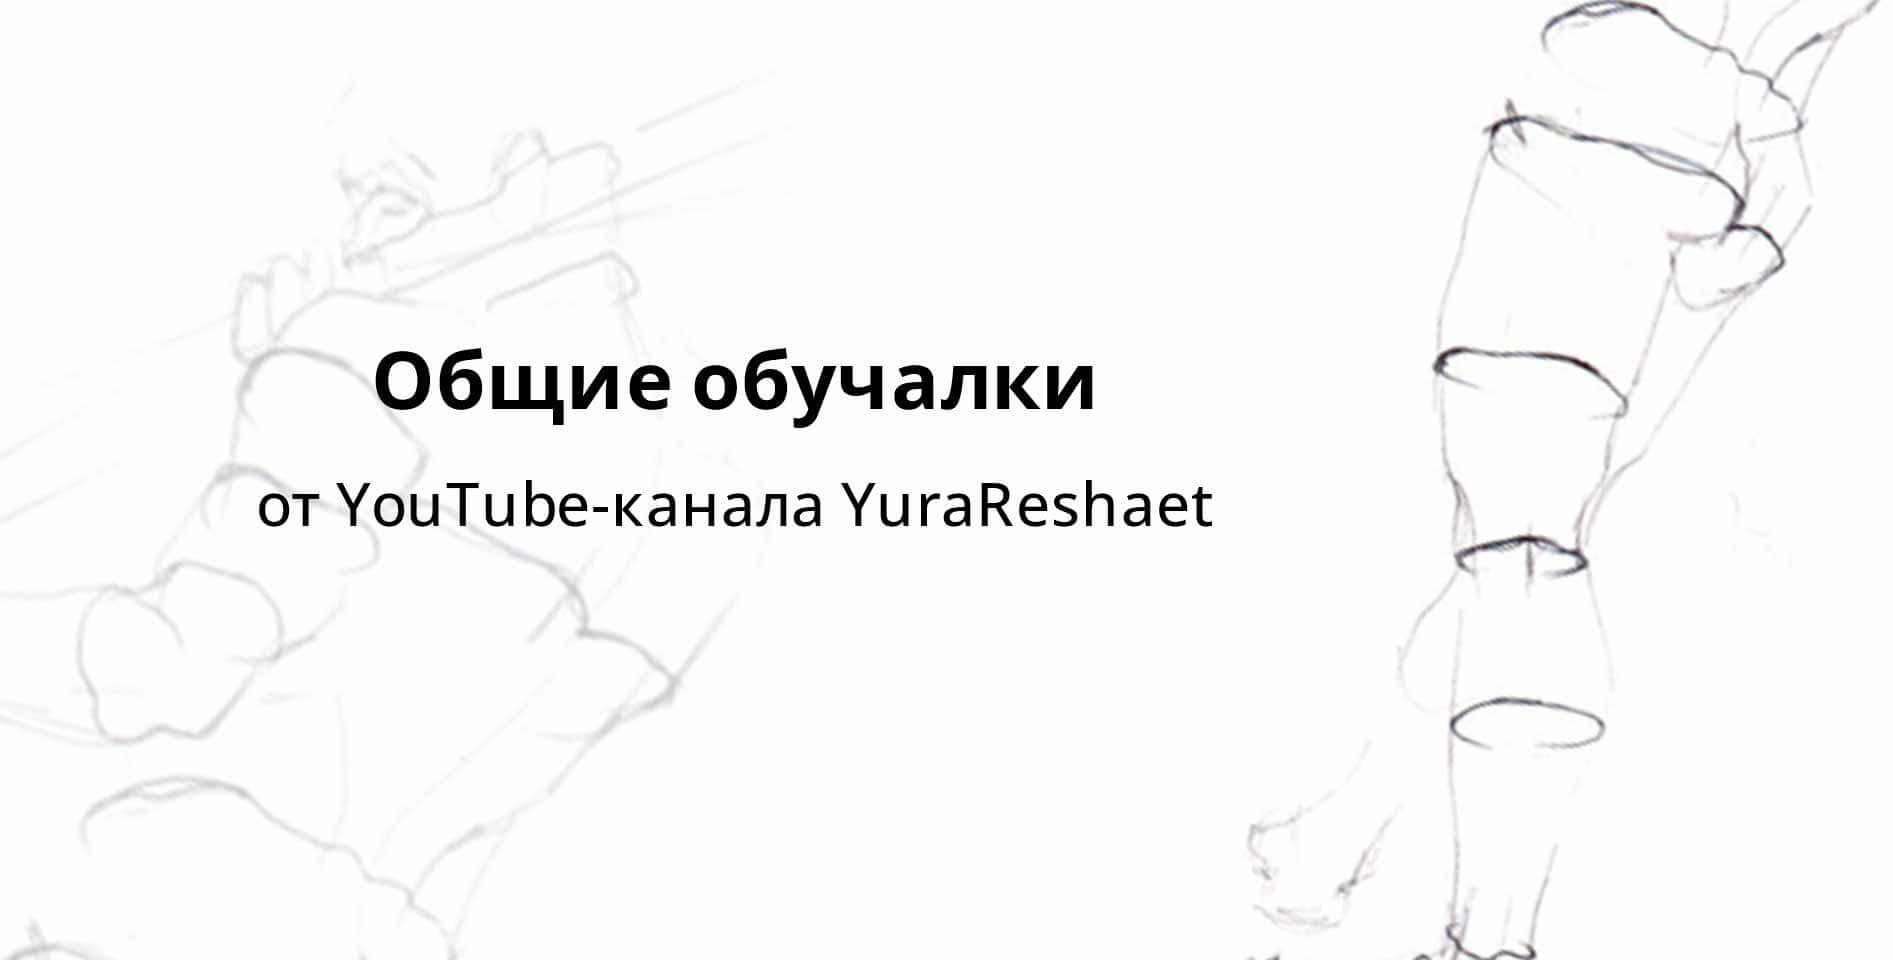 YouTube-канал YuraReshaet — Общие обучалки